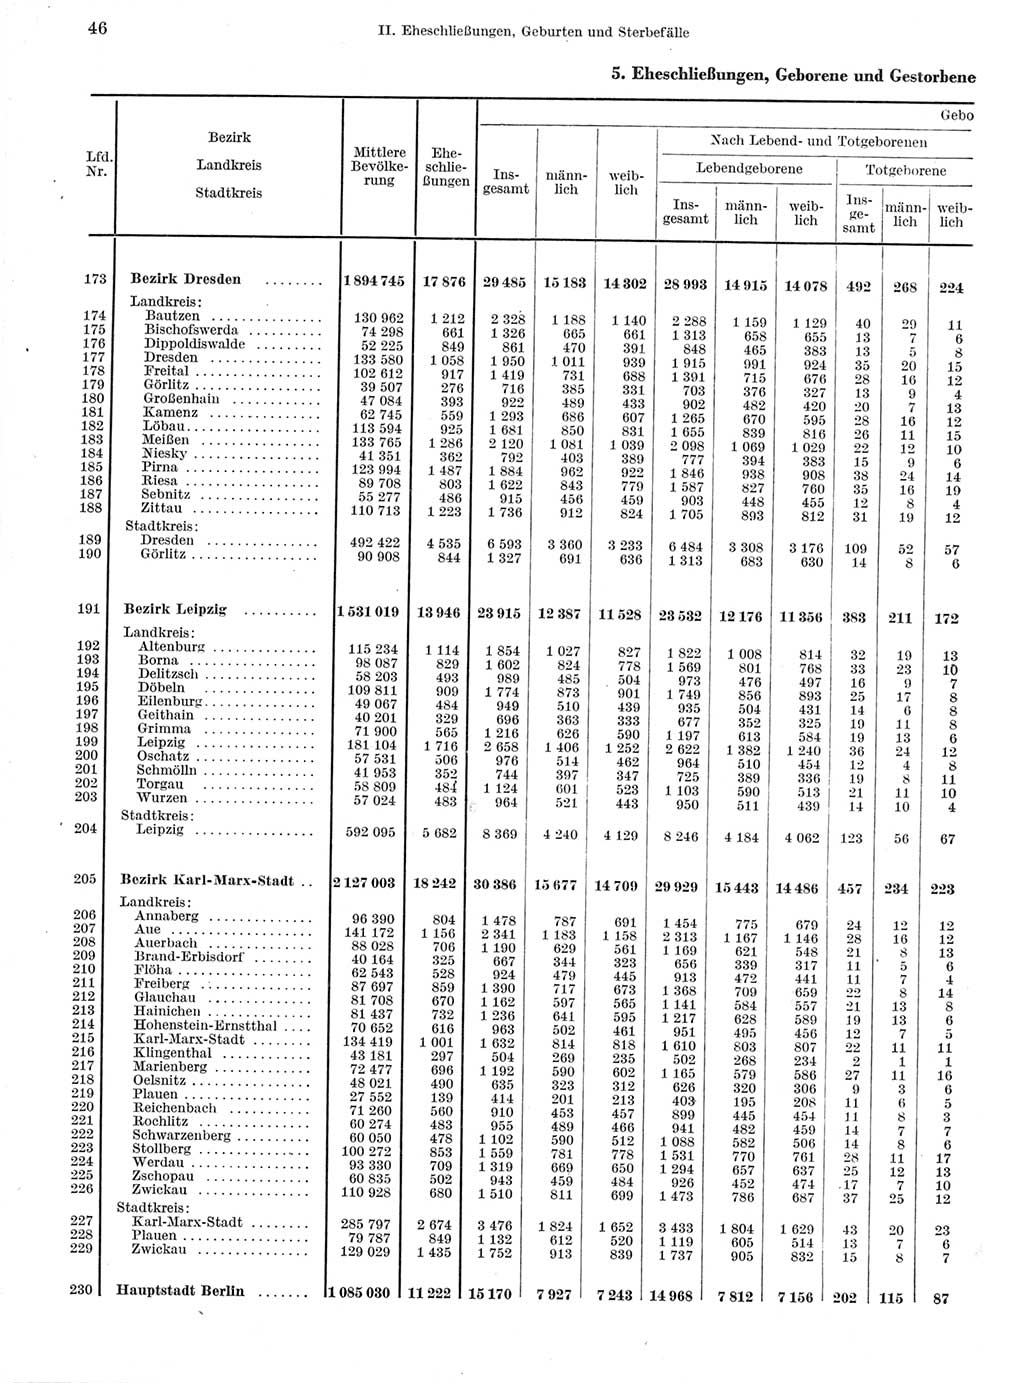 Statistisches Jahrbuch der Deutschen Demokratischen Republik (DDR) 1960-1961, Seite 46 (Stat. Jb. DDR 1960-1961, S. 46)